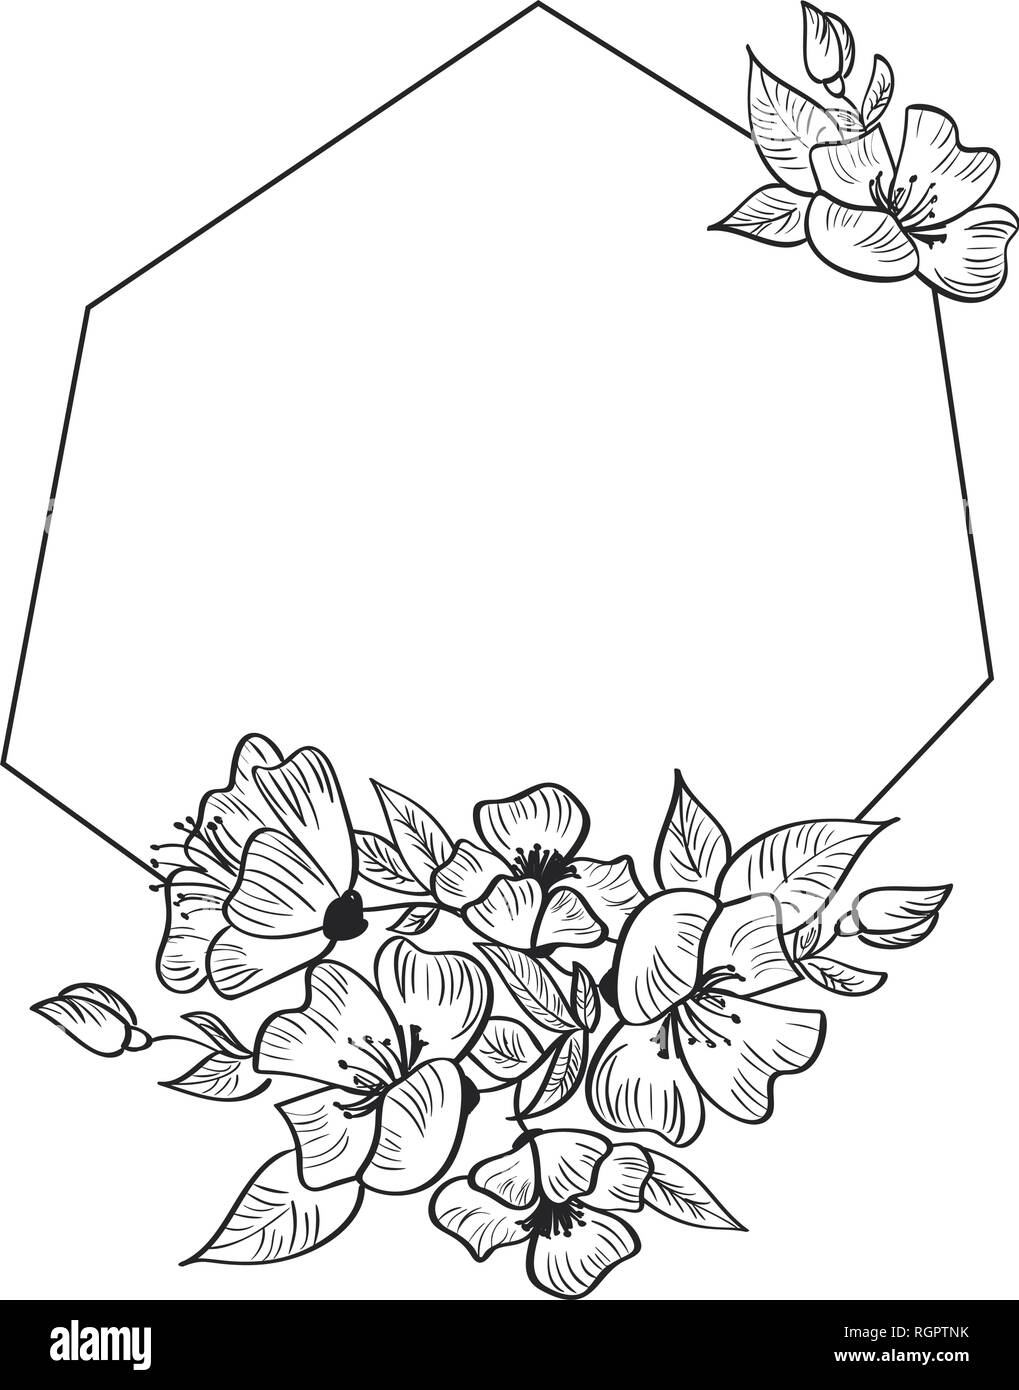 La géométrie de la main moderne stylisé du châssis pour la carte avec les fleurs et les feuilles. Vector illustration scandinave avec place pour votre texte Illustration de Vecteur